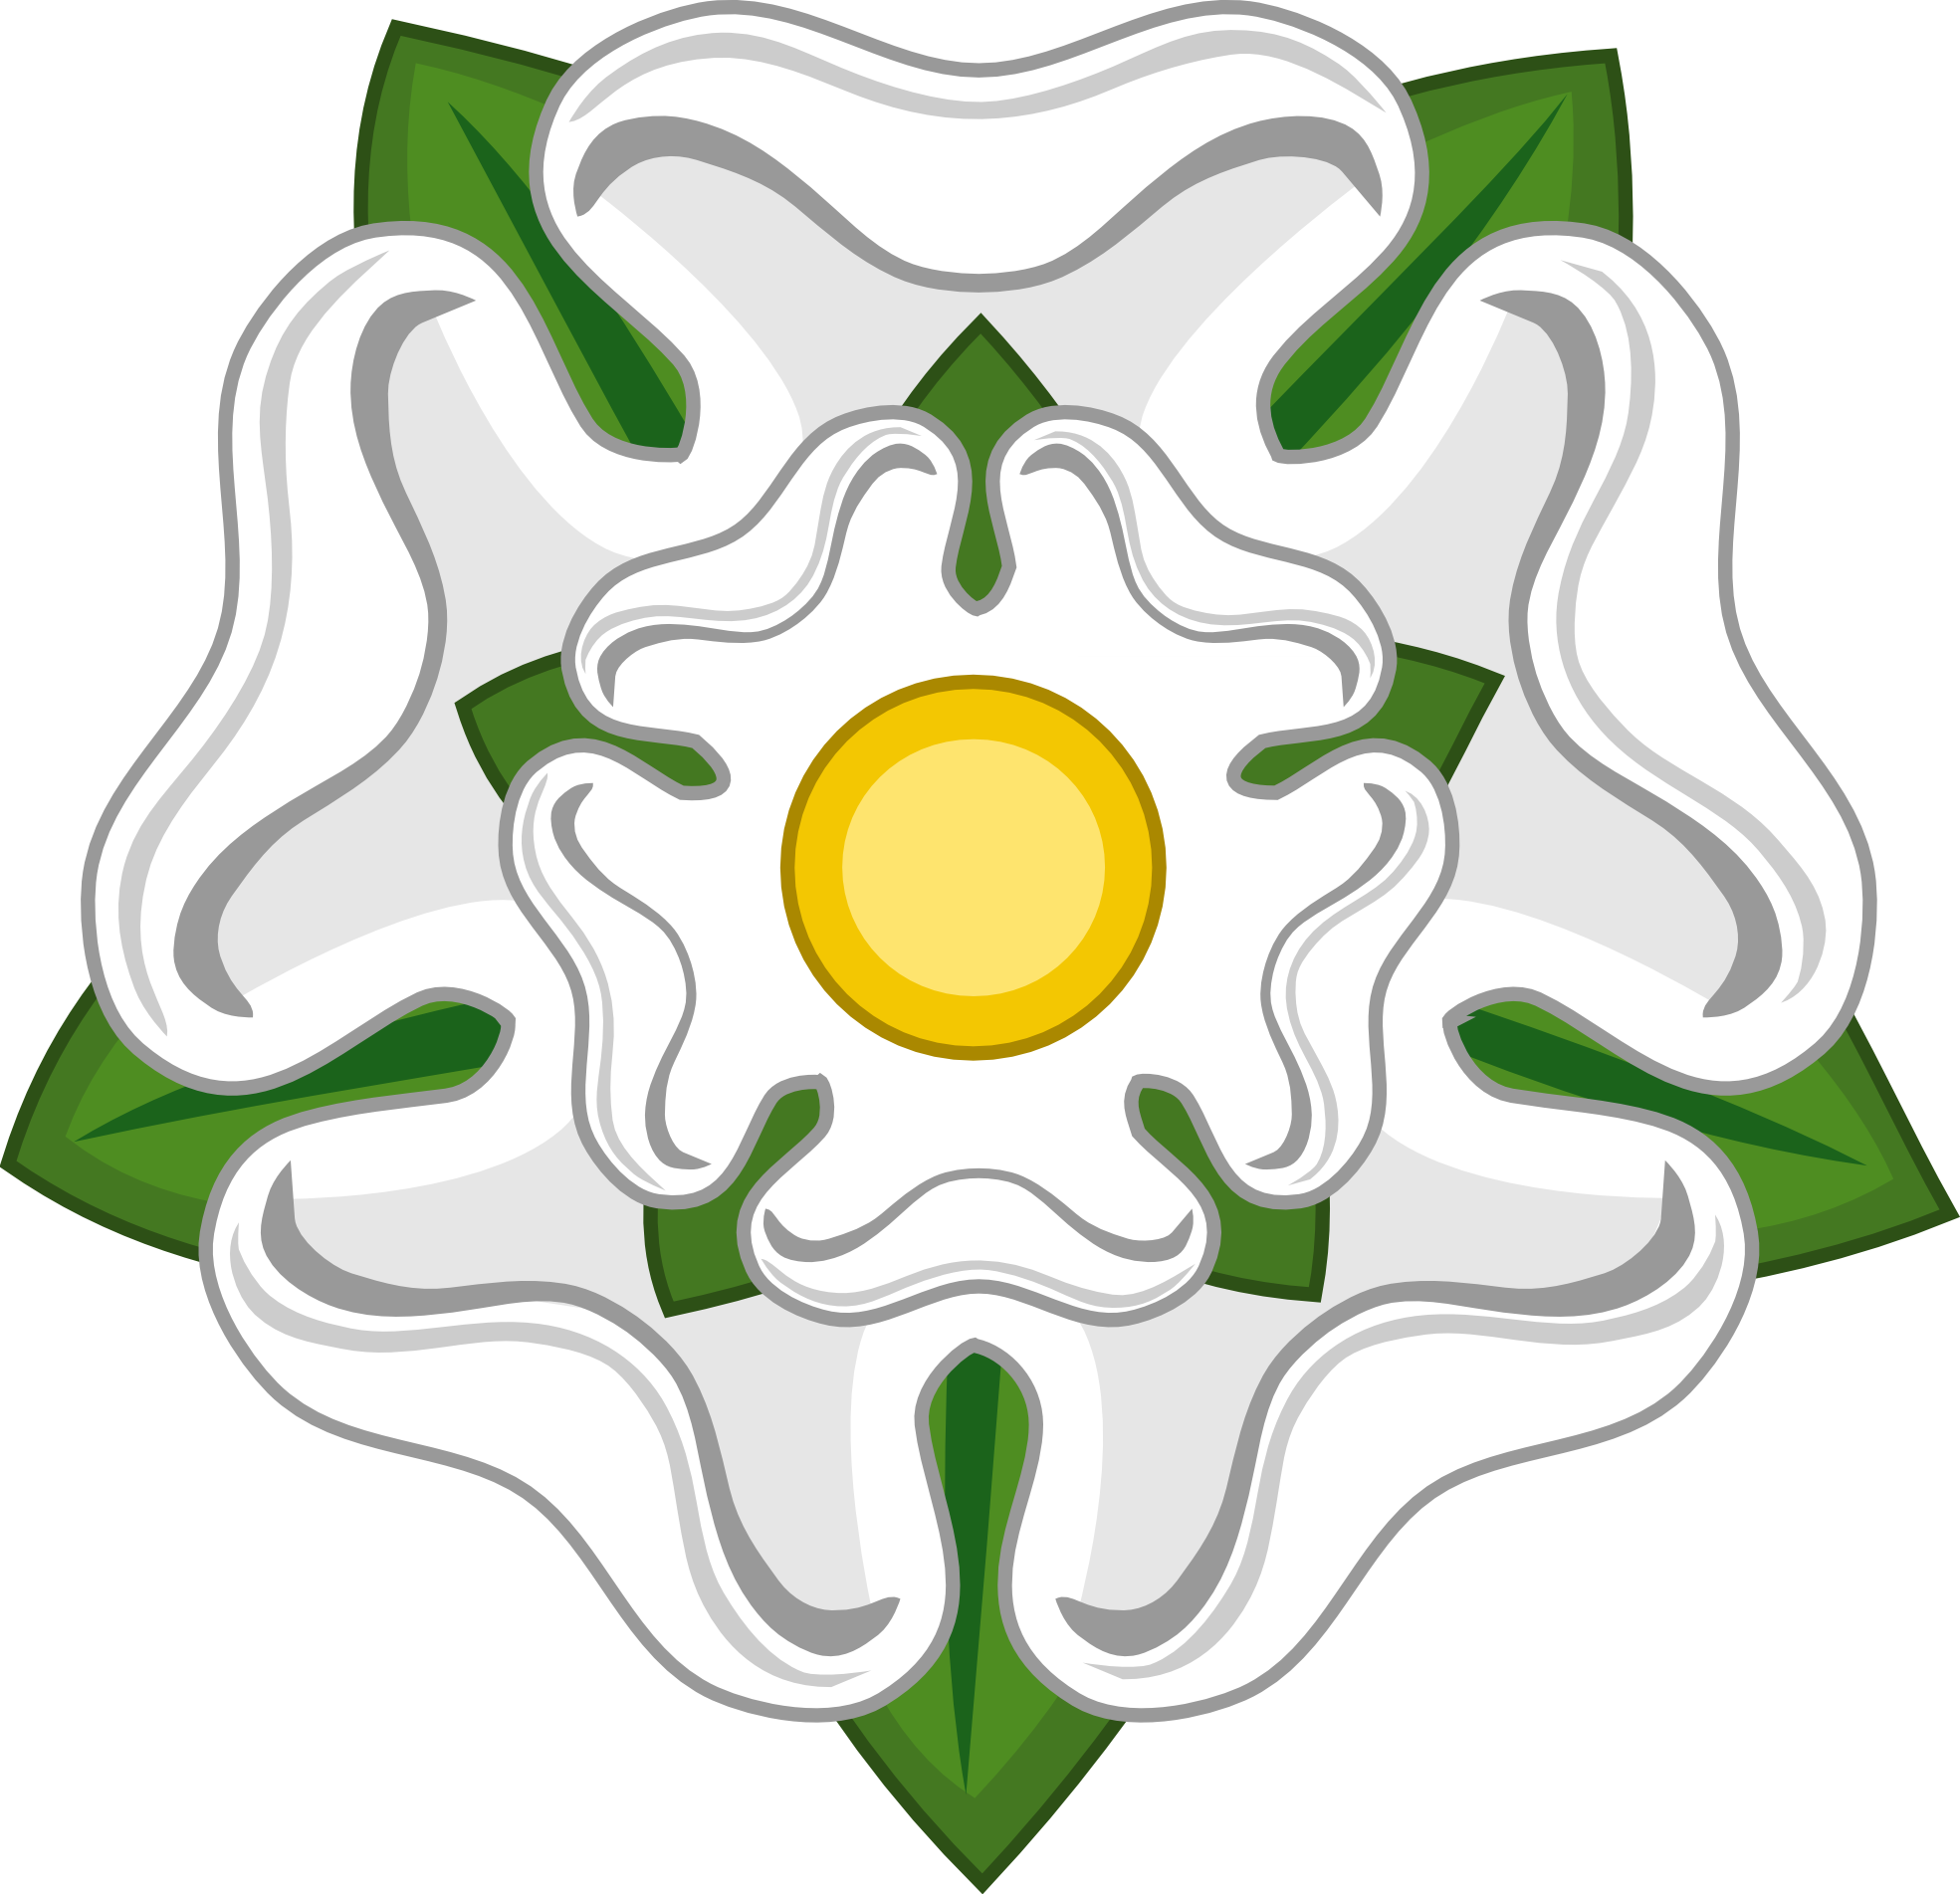 white rose badge of york SVG